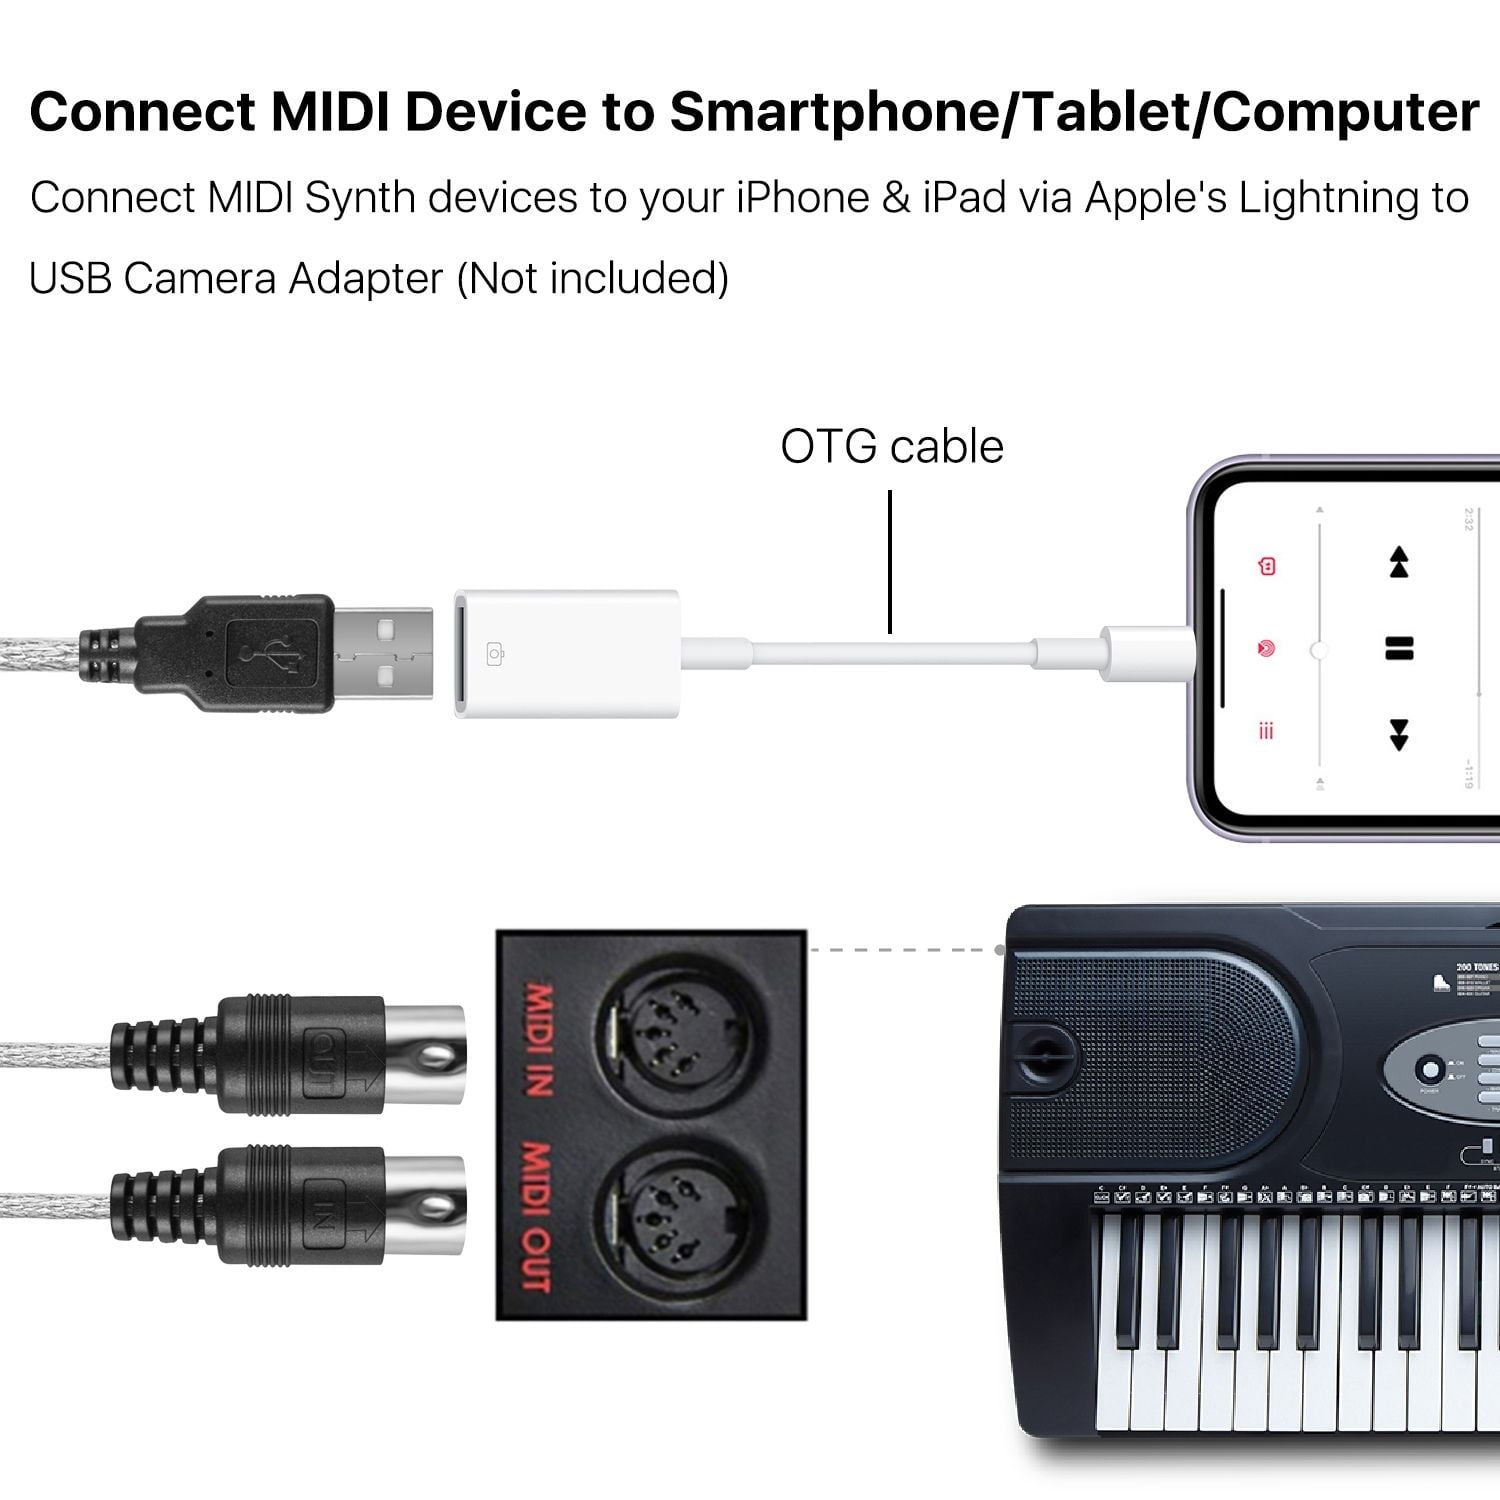 MIDI zu USB Kabel Konverter Universal MIDI zu USB IN-OUT Adapter Controller Line LED Anzeige Keyboard Piano Instrument auf Mac Computer PC Windows Laptop Musik Studio Elektronisches Musikzubehör